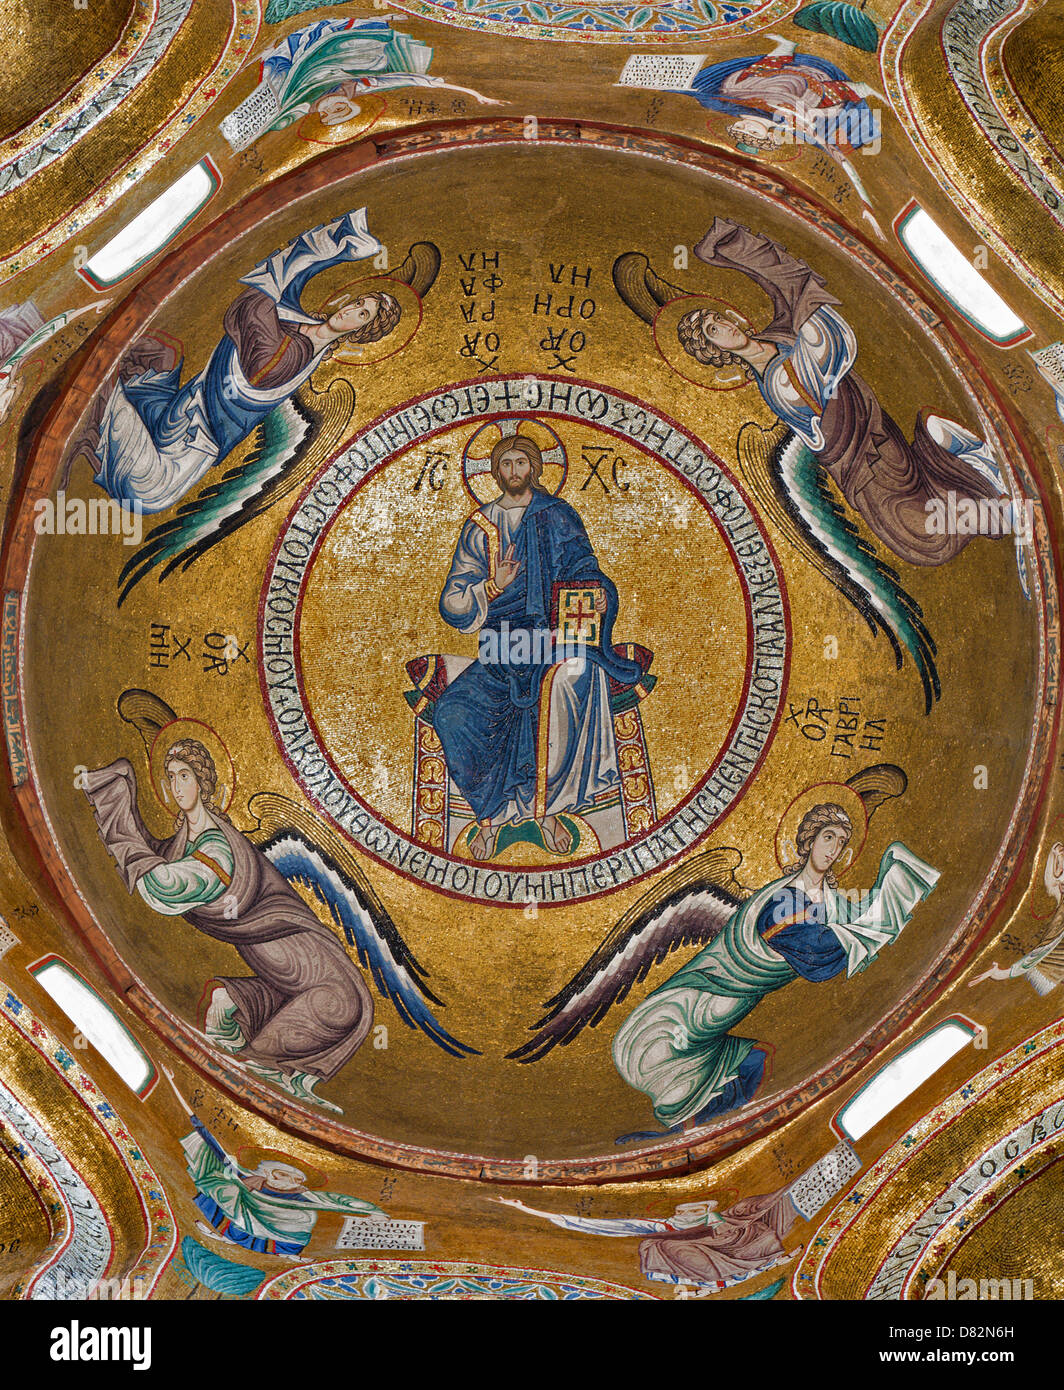 PALERMO - Abril 8: Mosaico de Jesucristo de la cúpula de la iglesia de Santa Maria dell'Ammiraglio Foto de stock